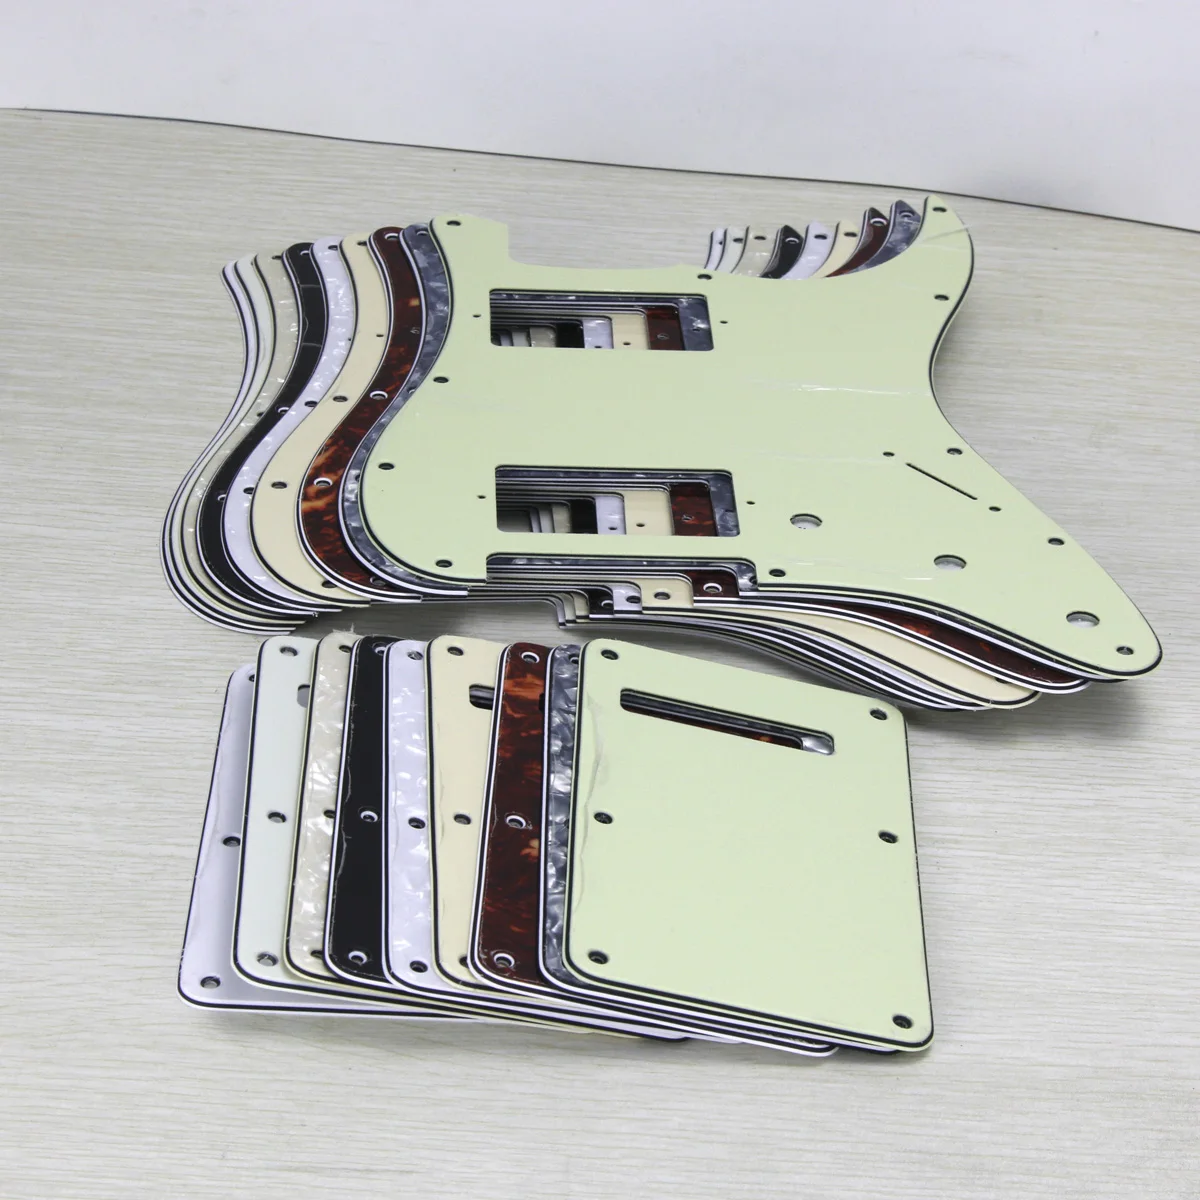 

Электрическая гитара FLEOR HH Накладка для защиты от царапин, задняя пластина и винты для 11 отверстий, американский стандарт FD гитара стиля ST